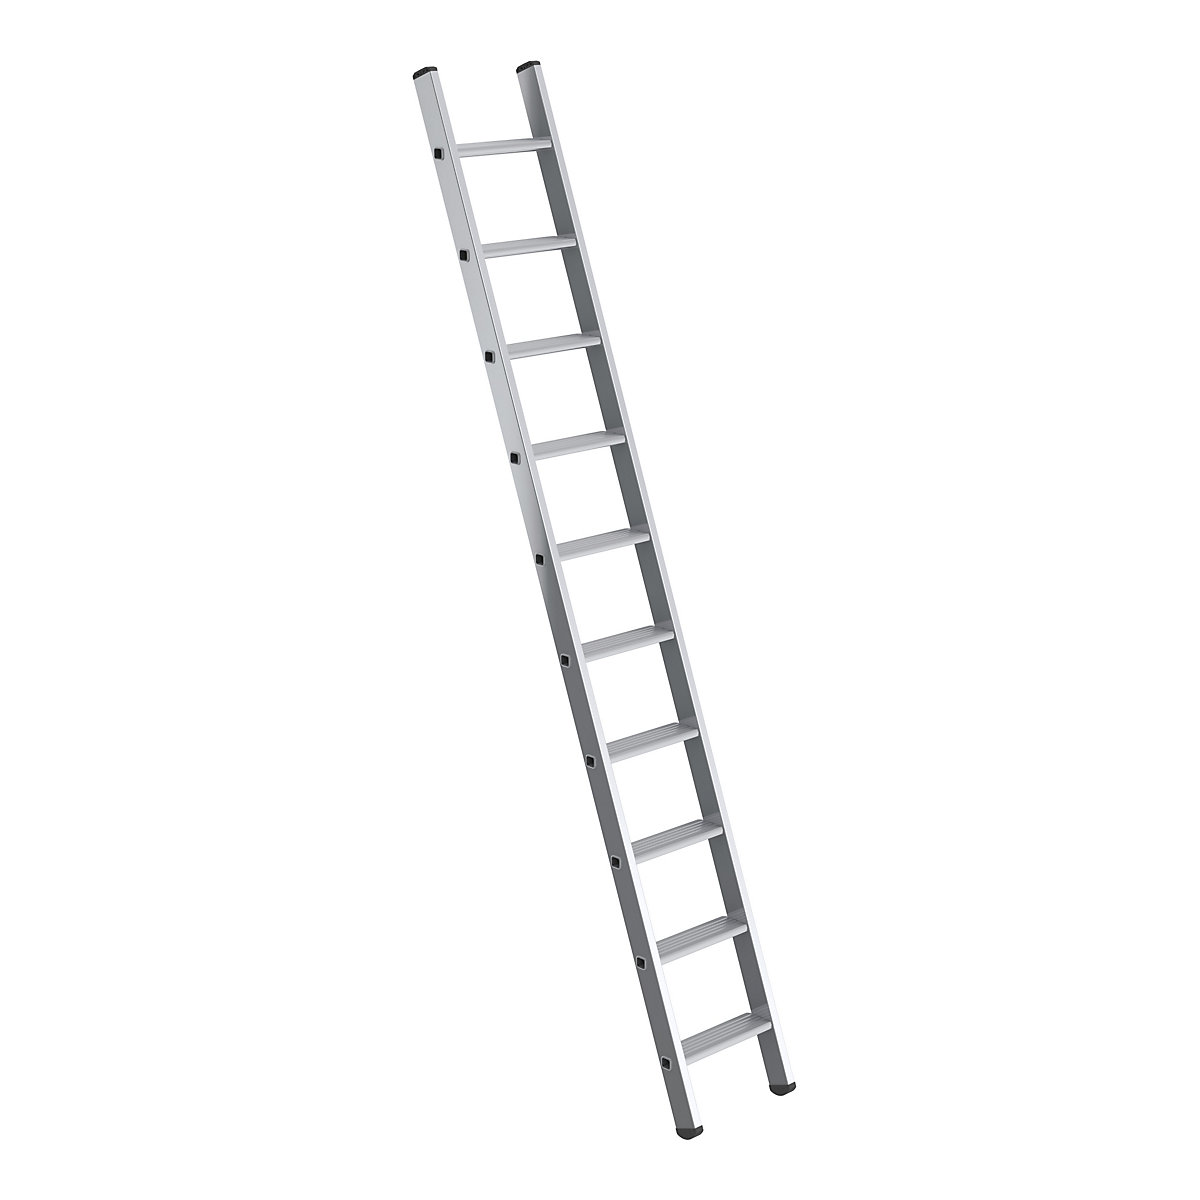 Prislonska lestev s stopnicami – MUNK, širina 350 mm, 10 stopnic, stranica 58 x 25 mm-5